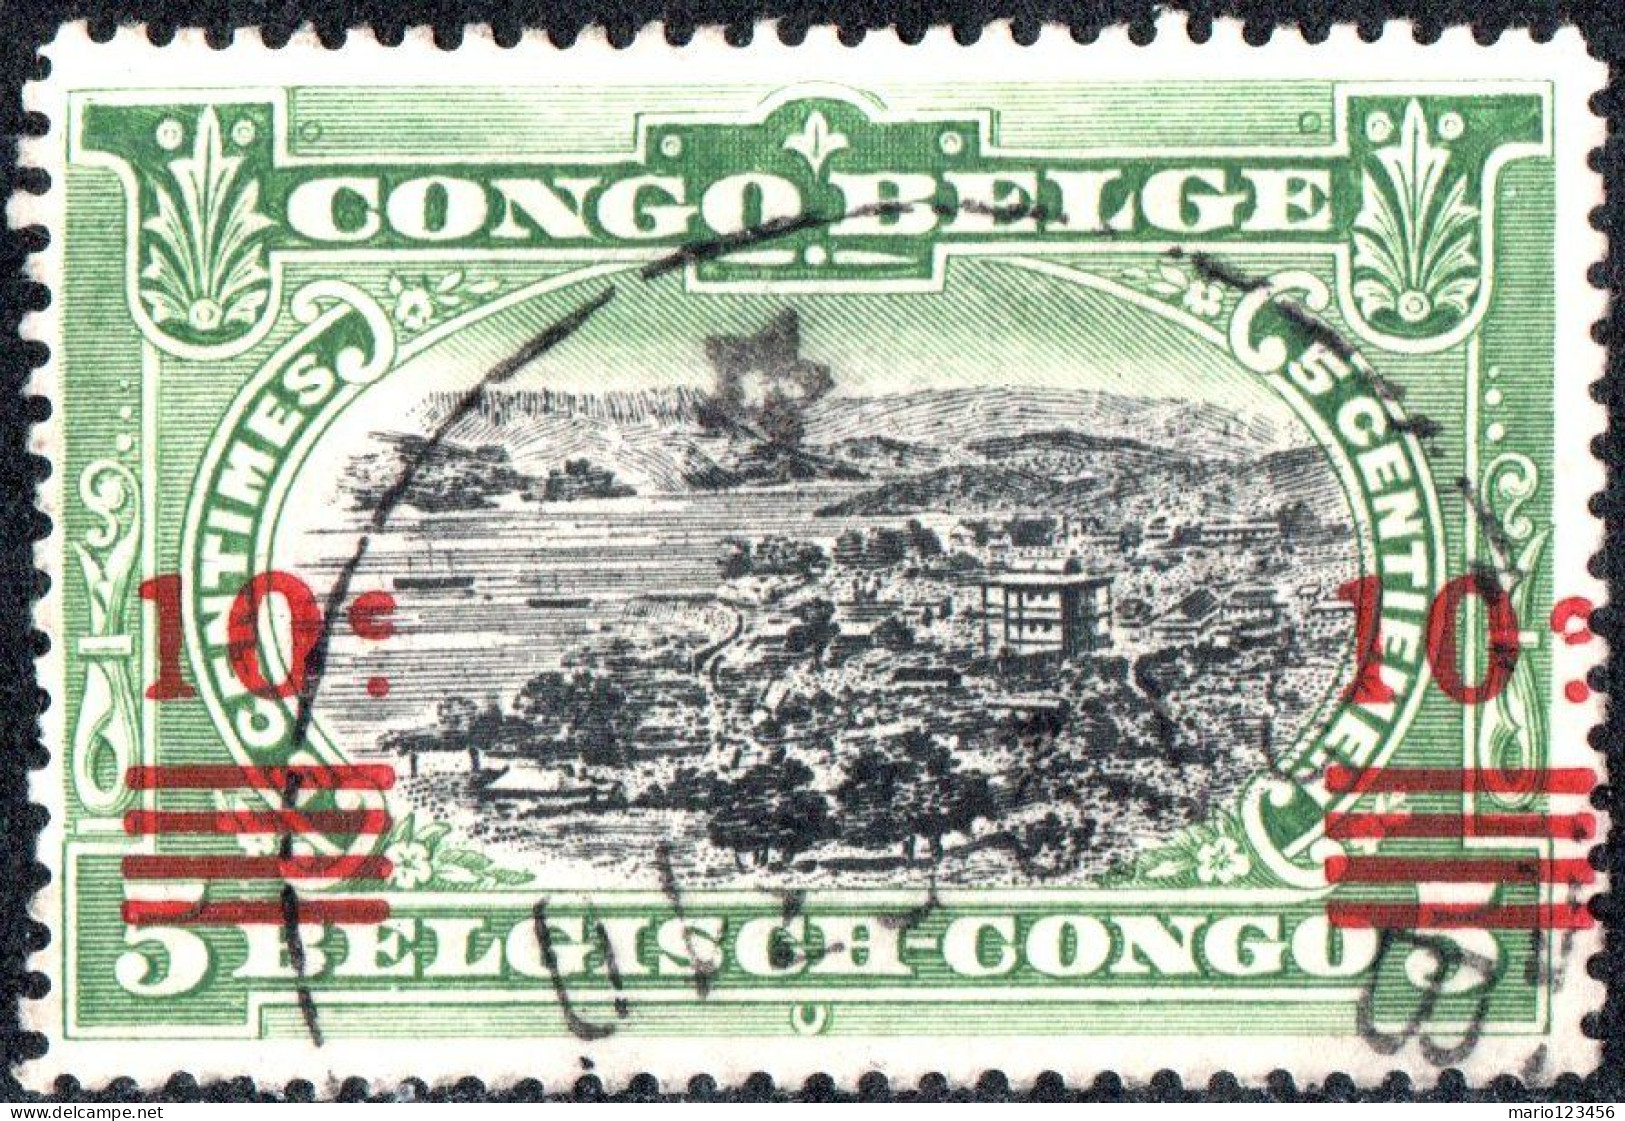 CONGO BELGA, BELGIAN CONGO, PAESAGGI, LANDSCAPE, 1921, USATI Mi:BE-CD 47, Scott:BE-CD 65, Yt:BE-CD 86 - Usados